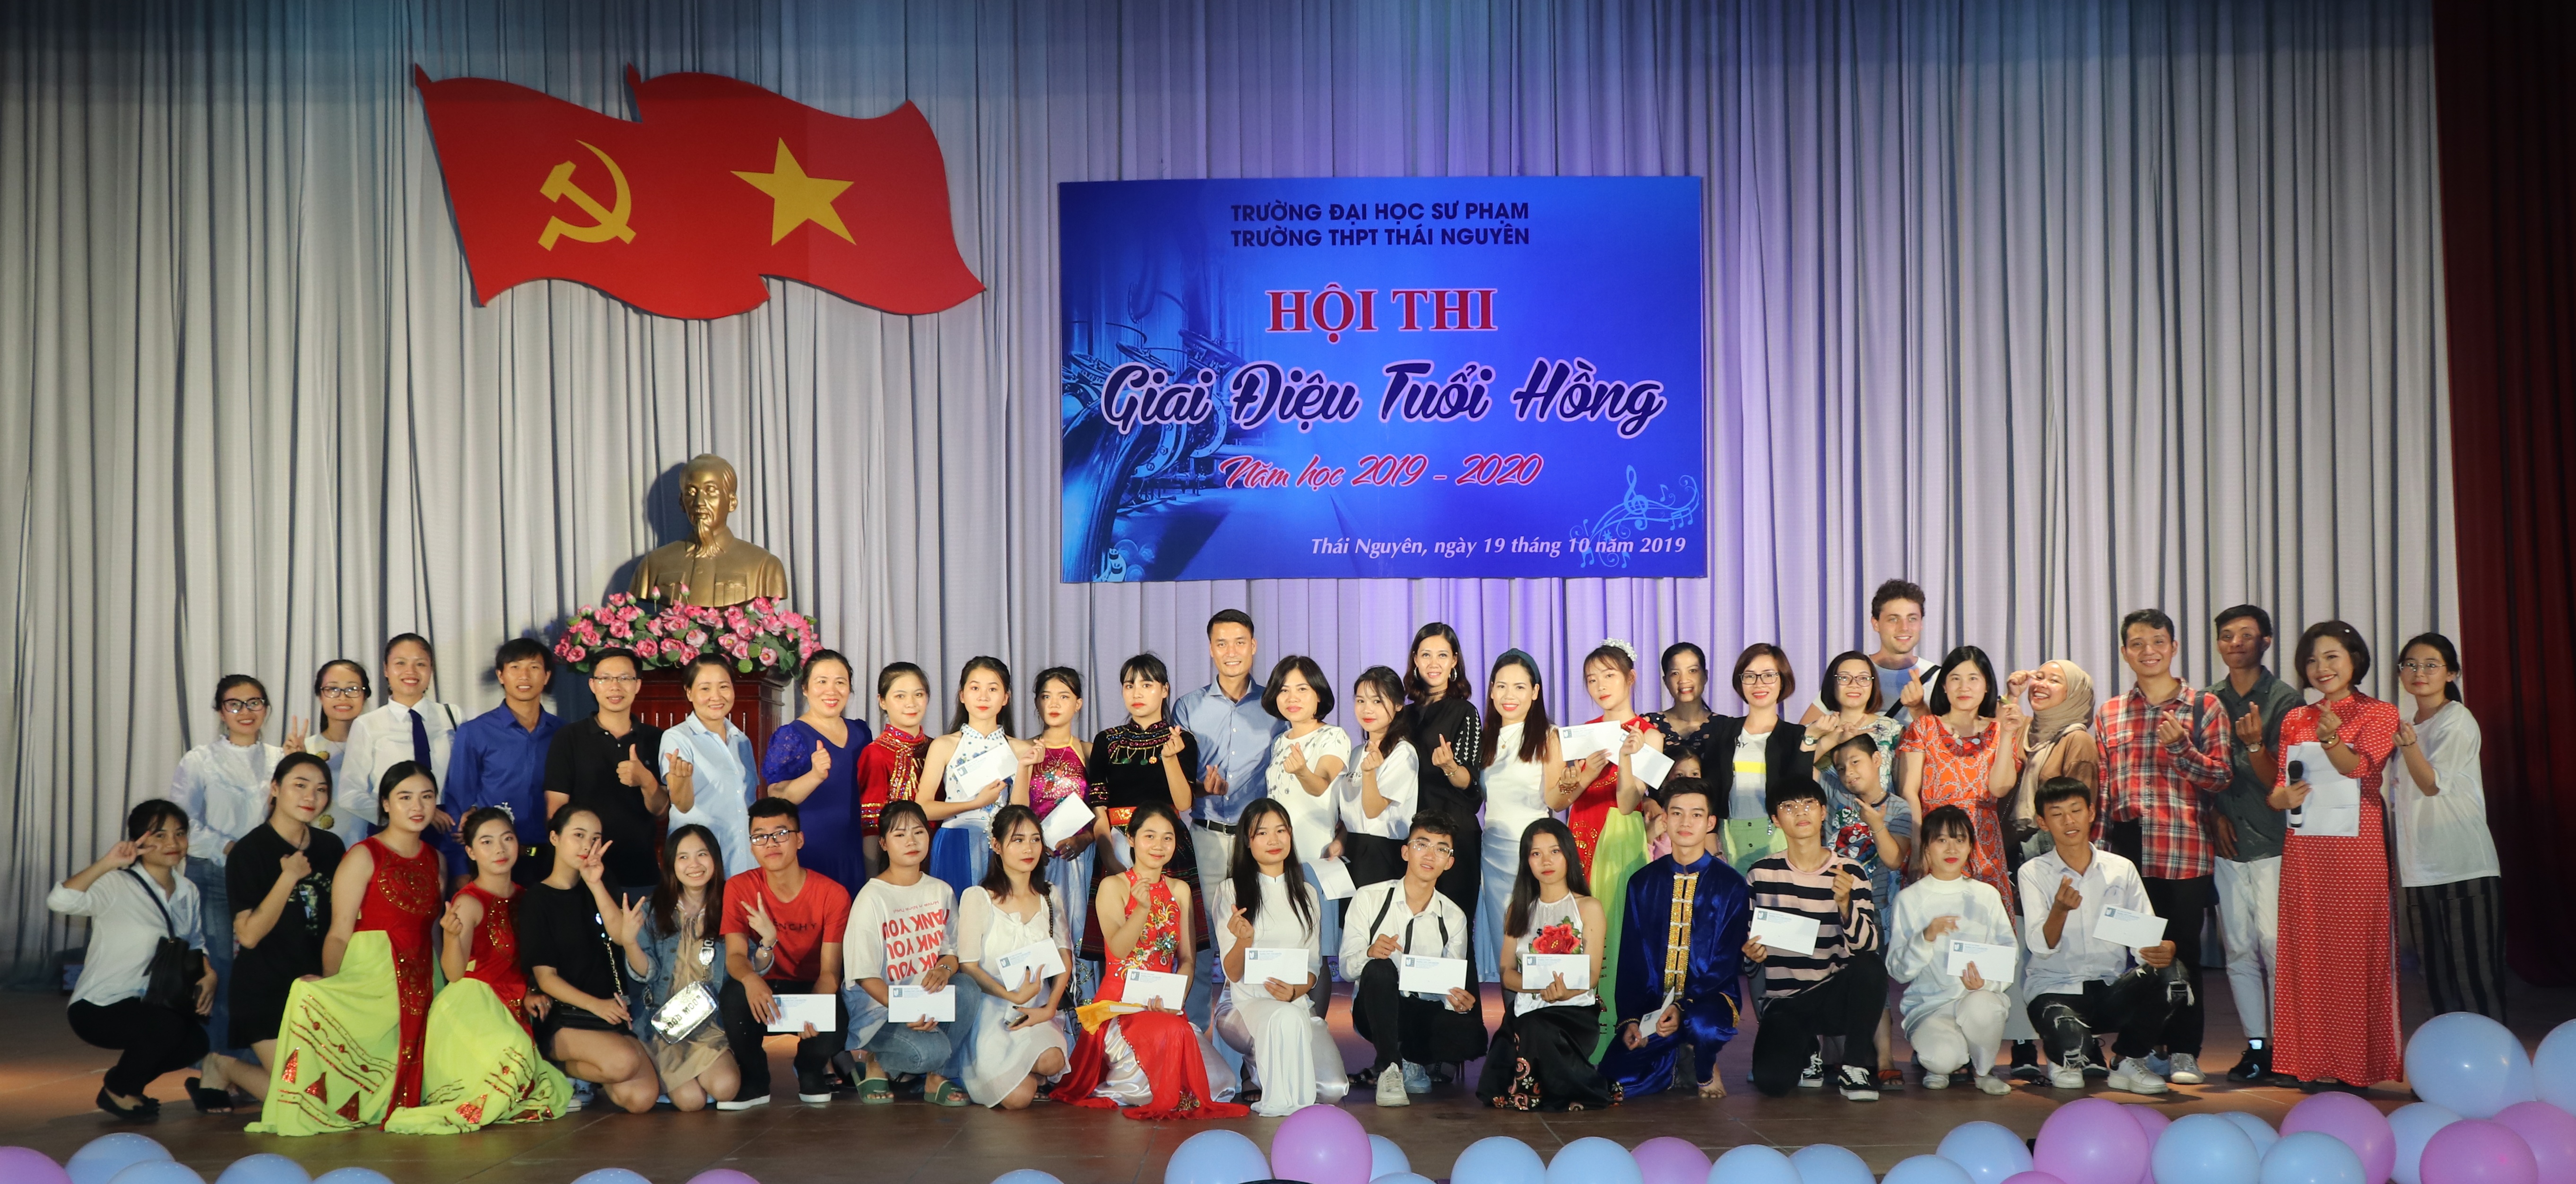 Trường THPT Thái Nguyên với Hội thi Giai điệu tuổi hồng năm học 2019-2020 